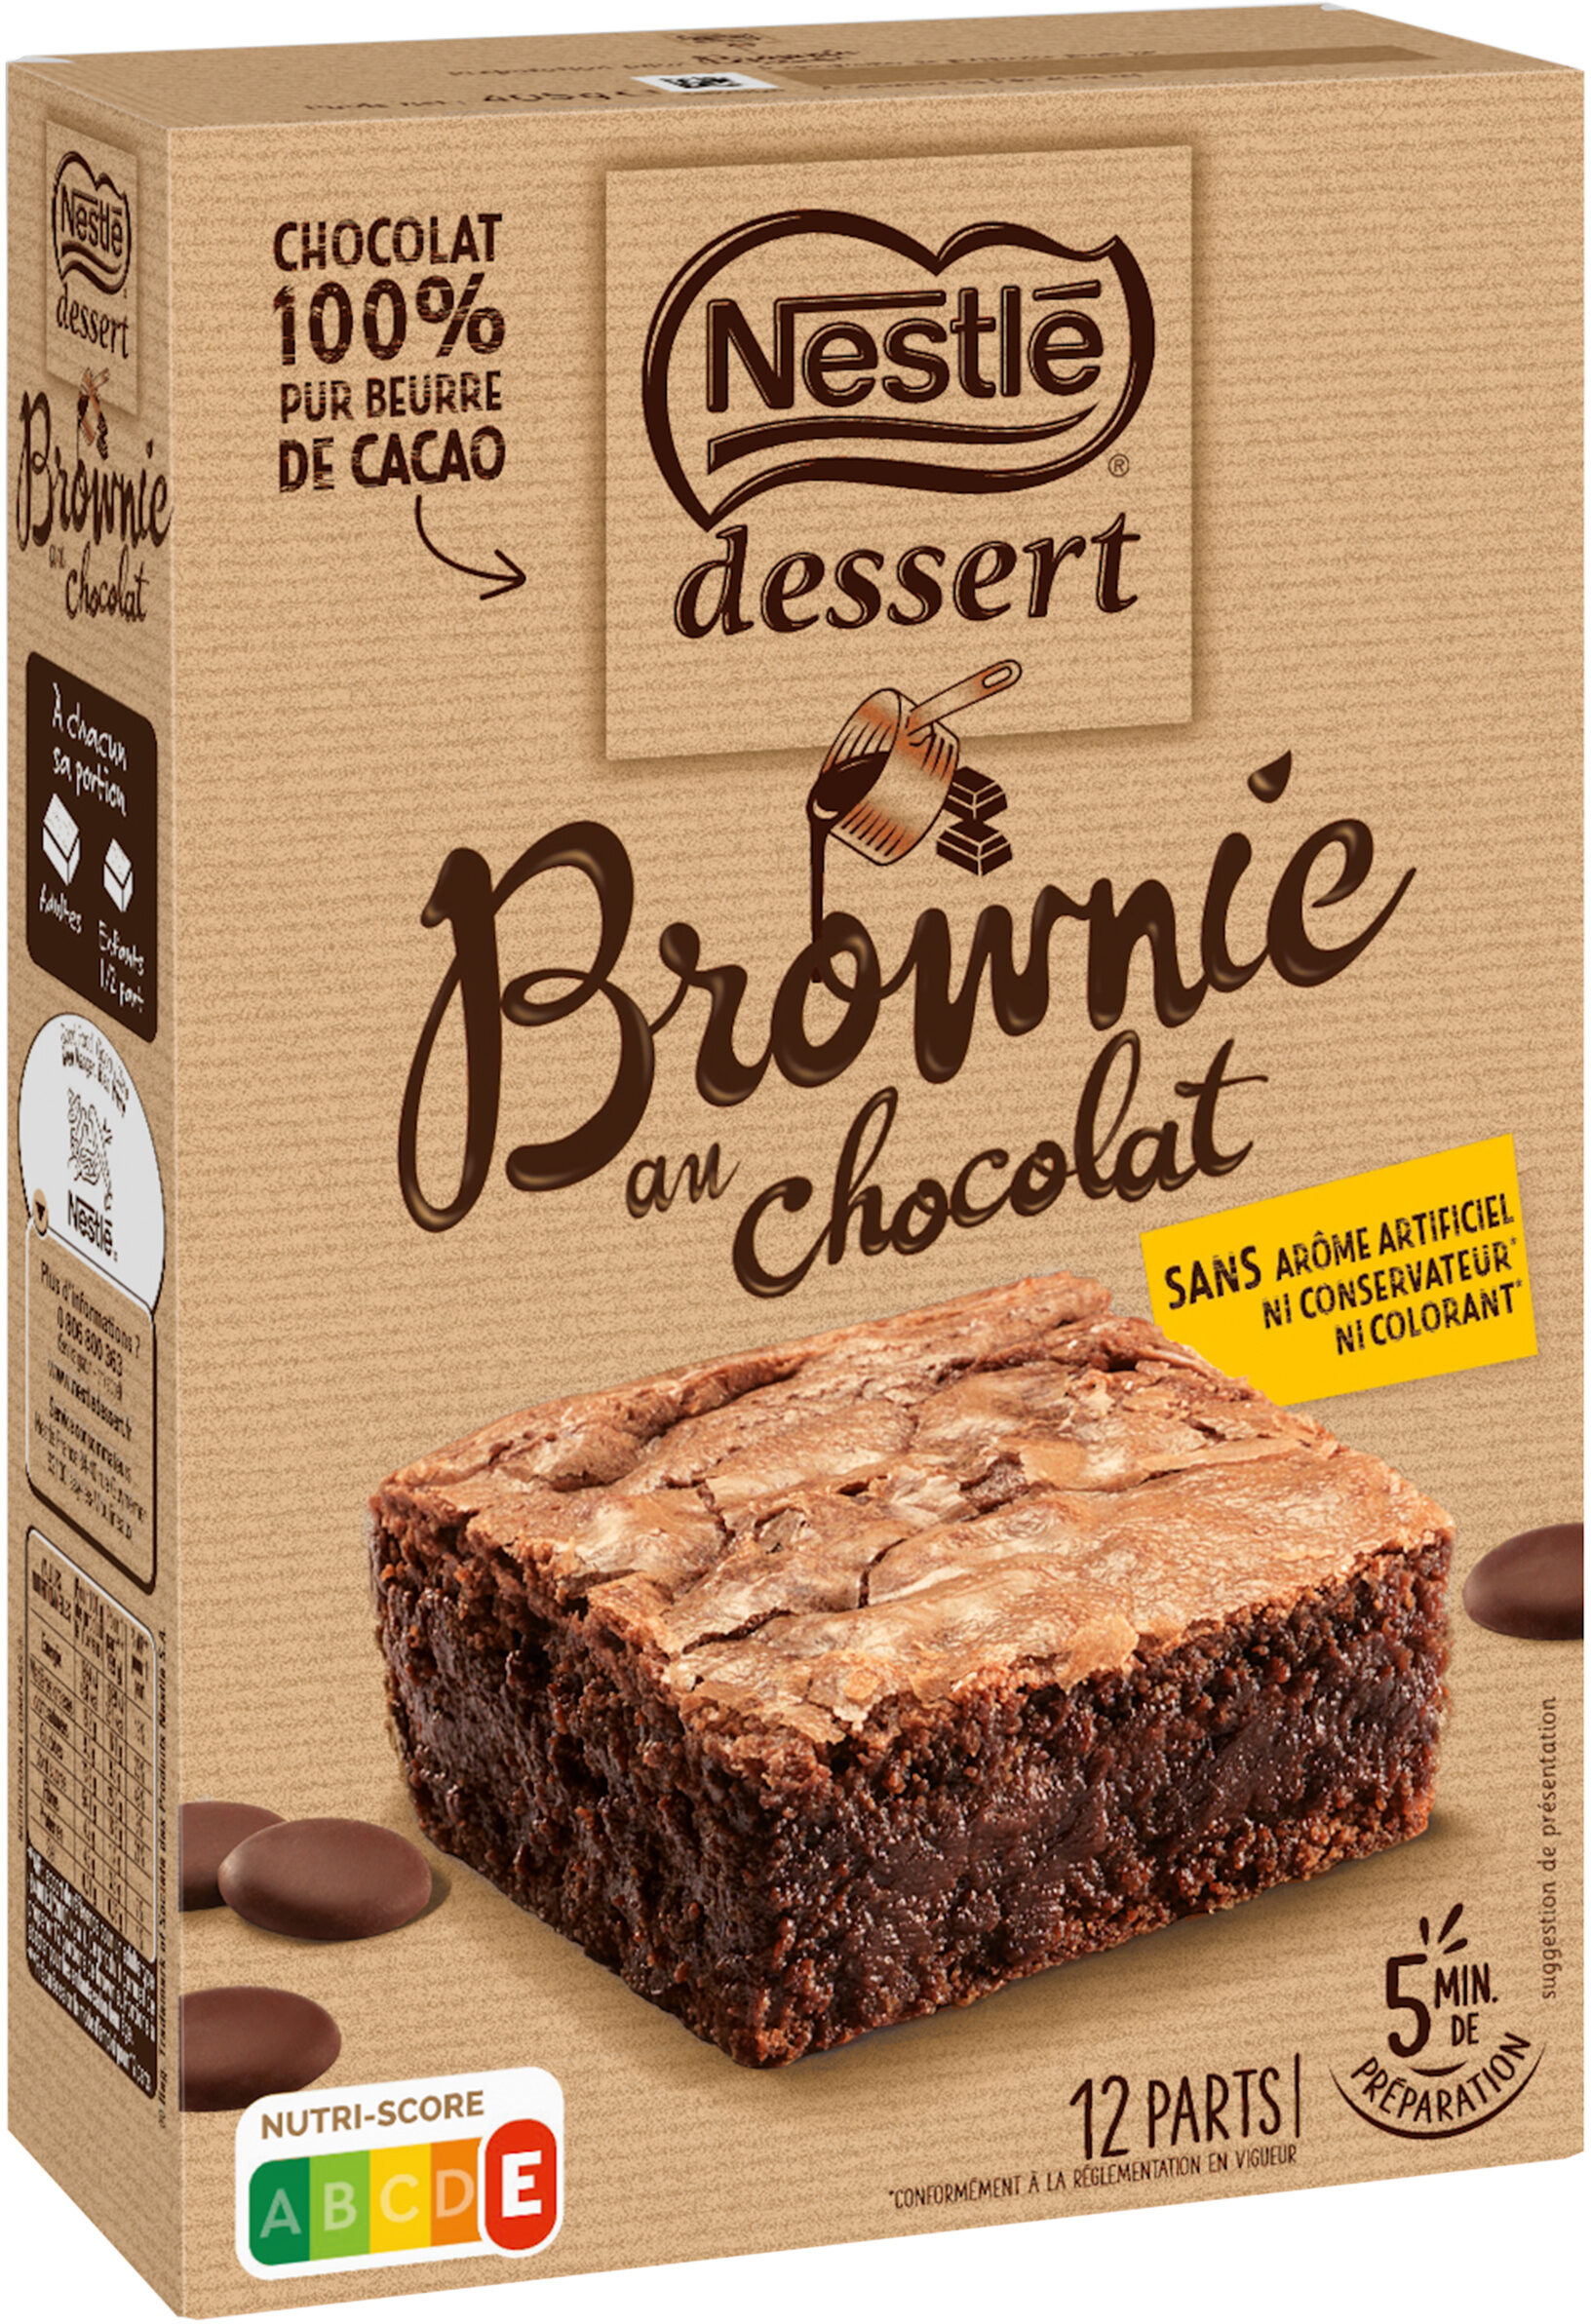 NESTLE DESSERT Préparation pour Brownie au Chocolat 405g - Product - fr